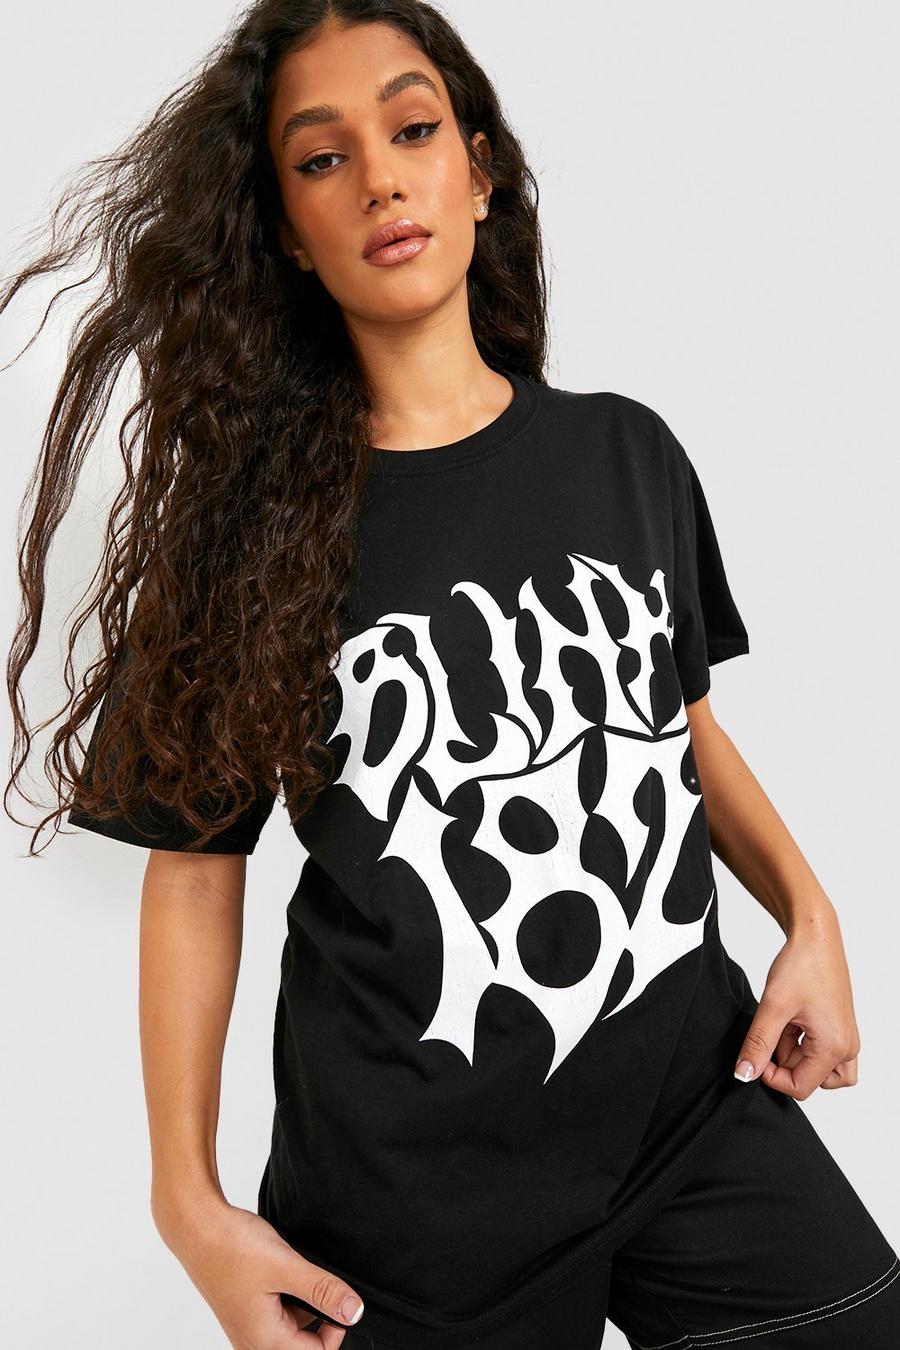 Black Oversized Blink 182 License T-shirt